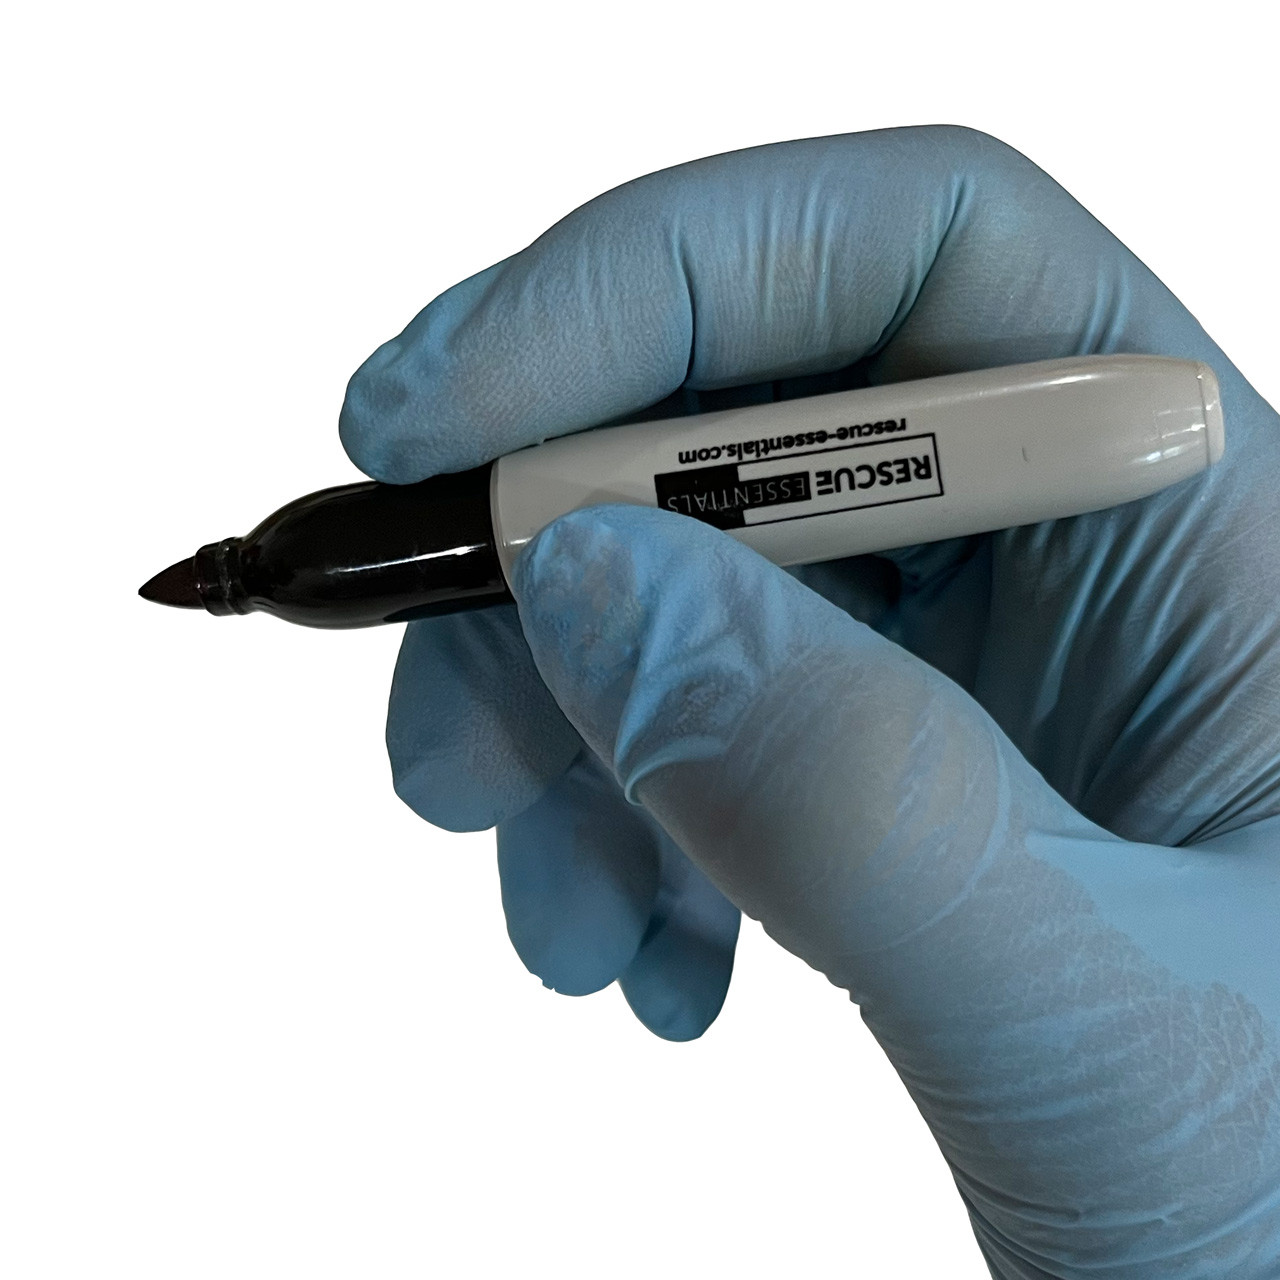 Sharpie Mini Marker - SAN35130